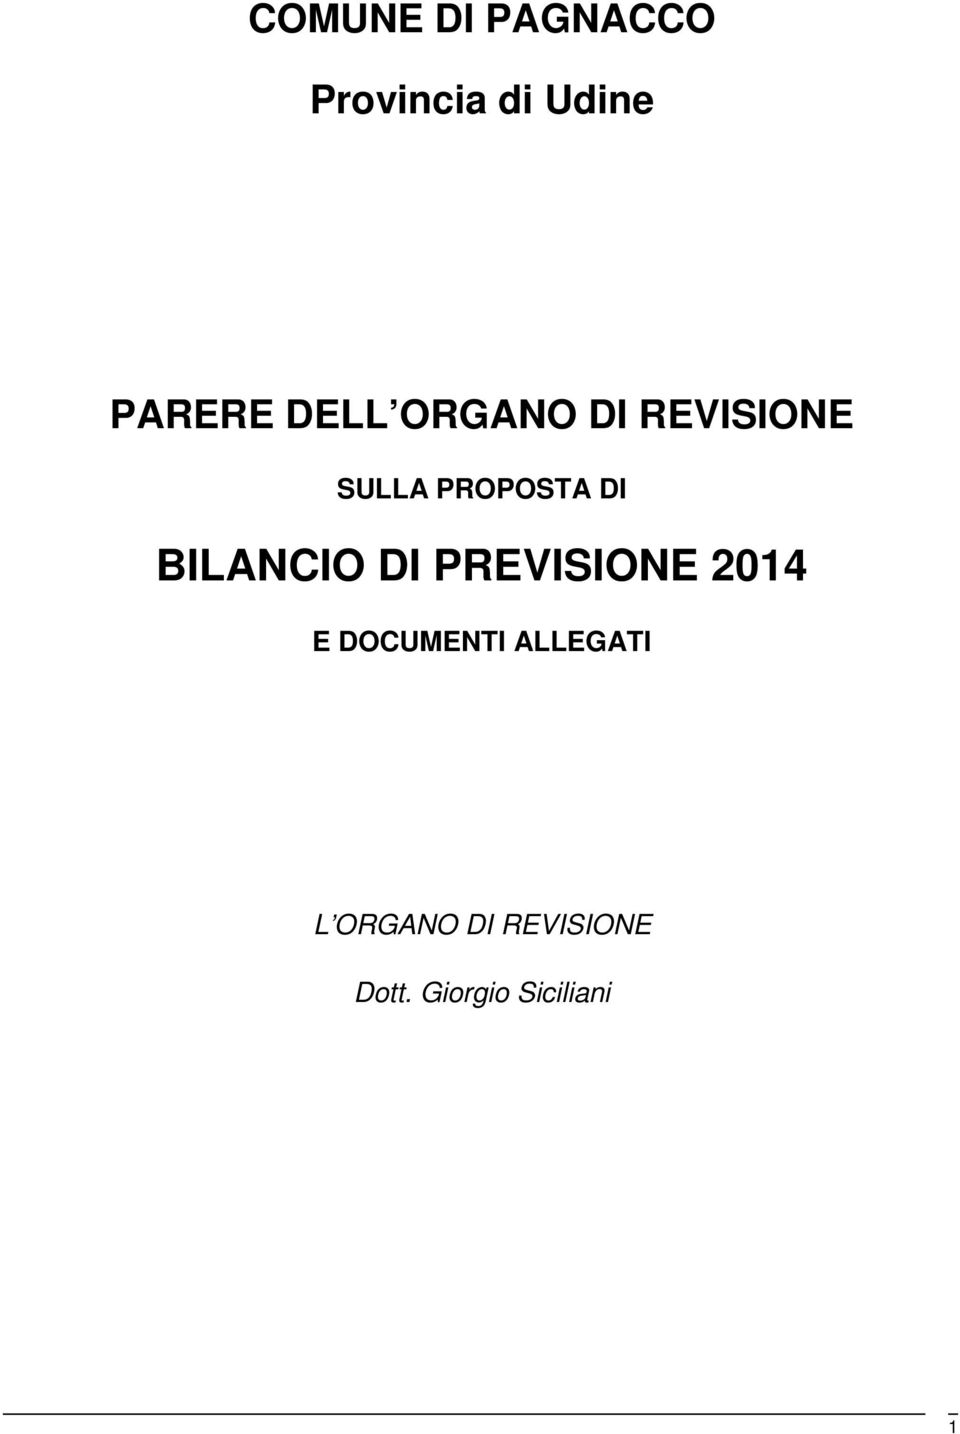 BILANCIO DI PREVISIONE 2014 E DOCUMENTI